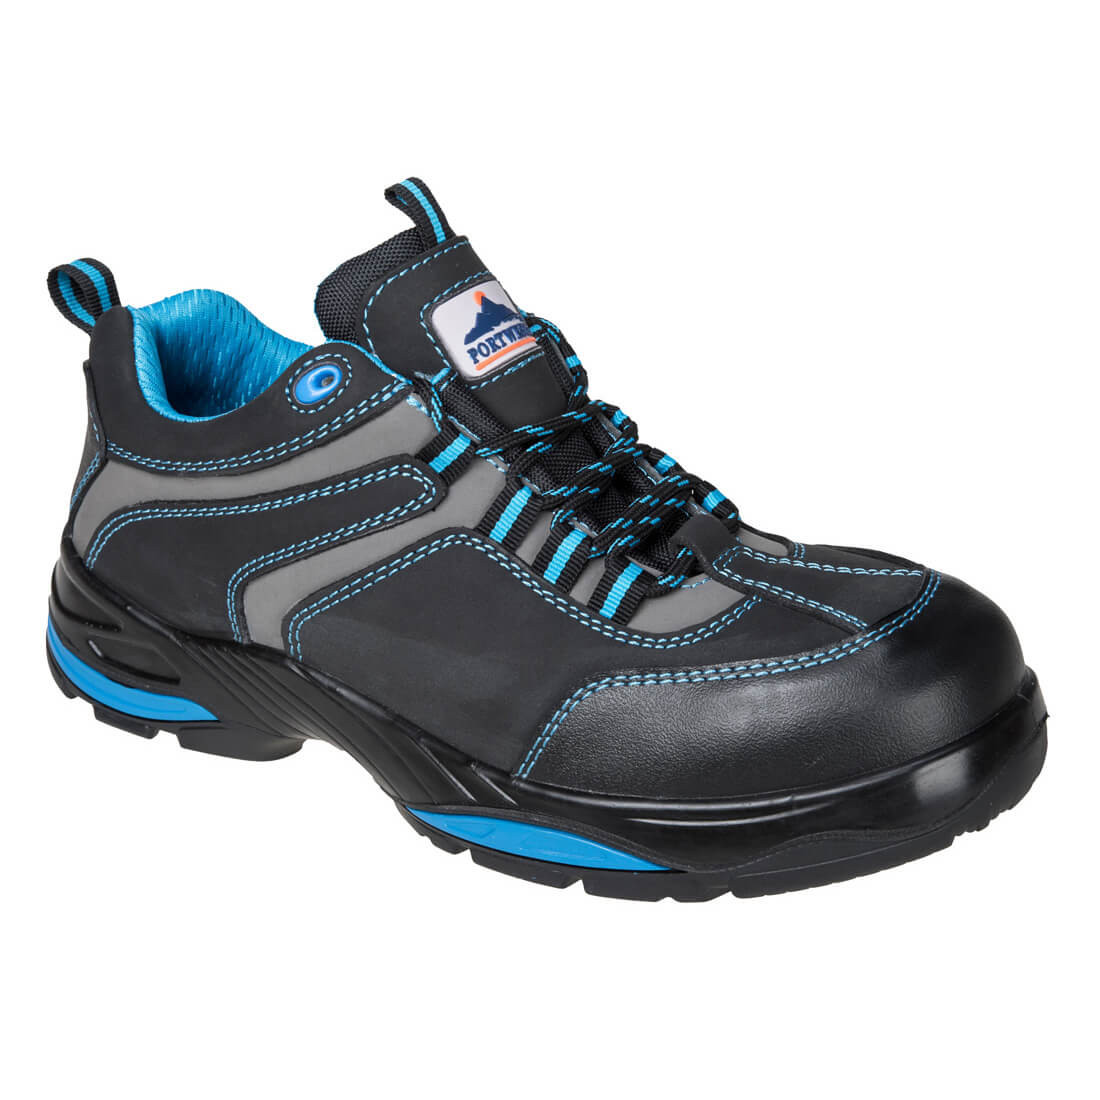 Zapato Operis Compositelite™ S3 HRO - Calzado de protección